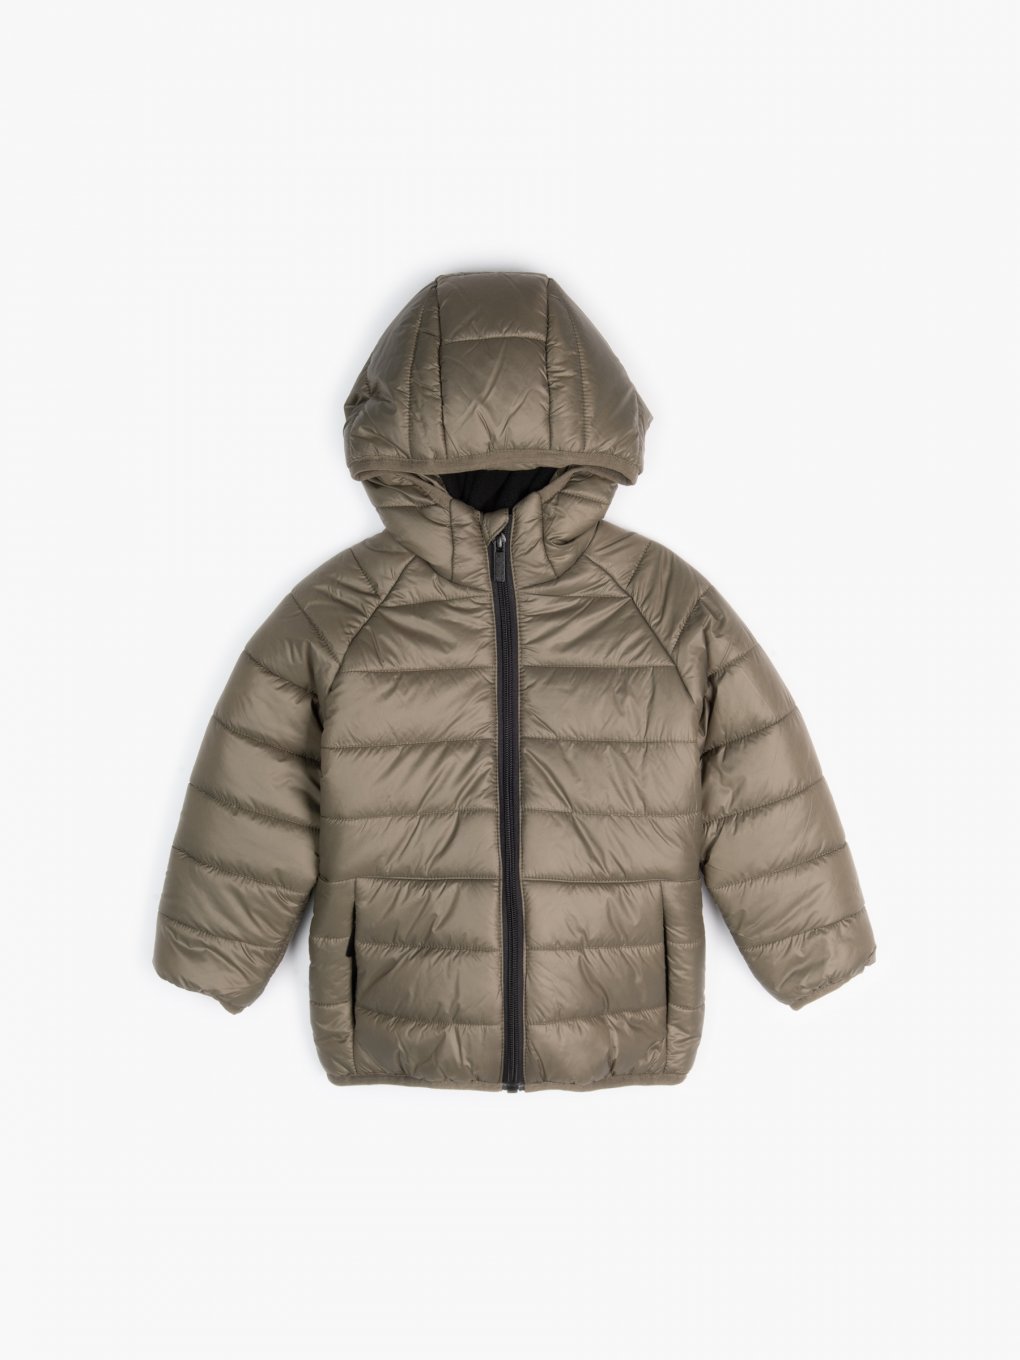 Basic fleece lined padded jacket